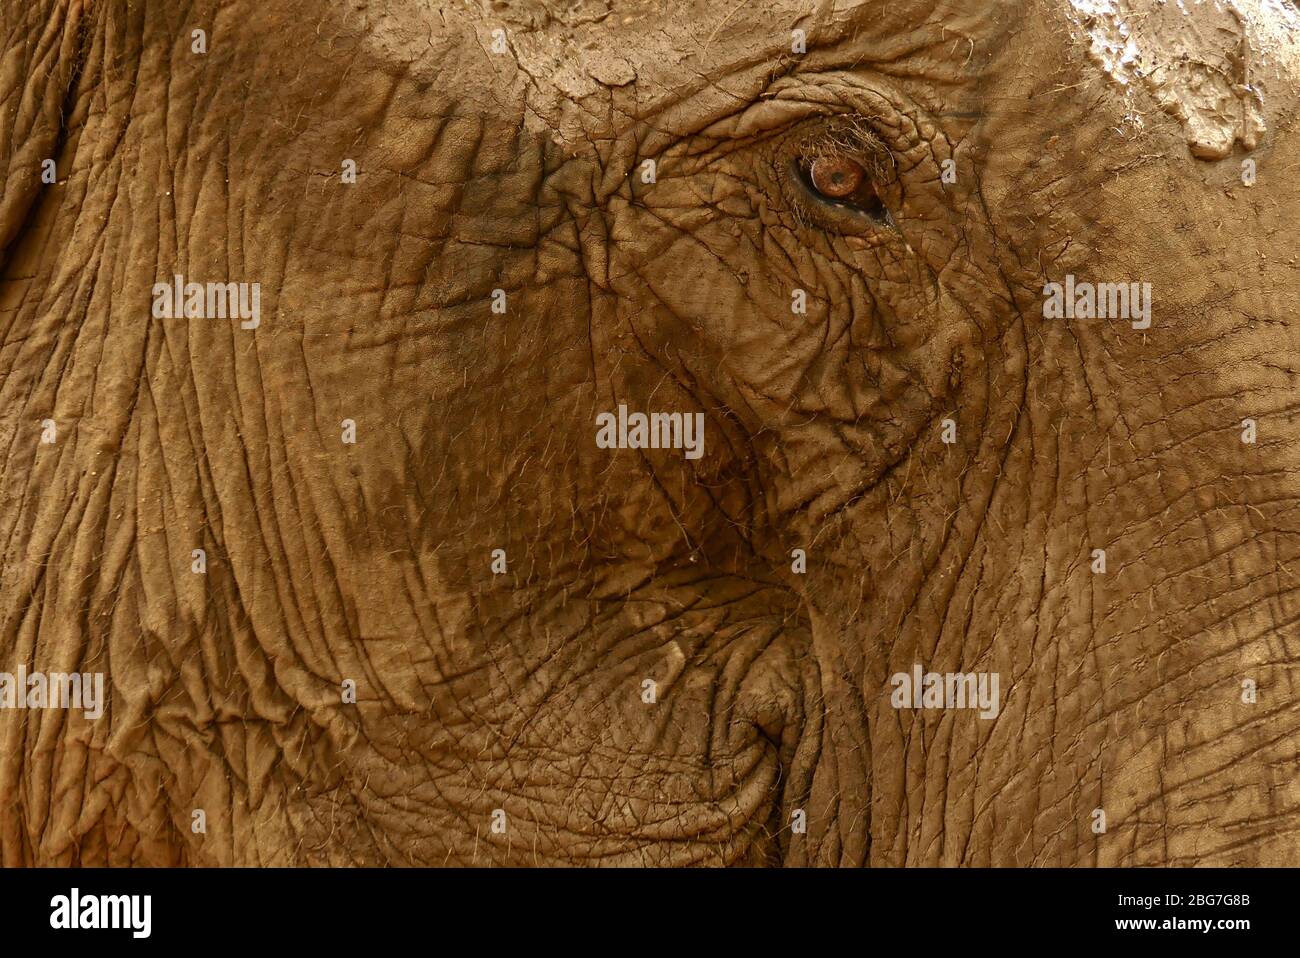 Primo piano di un elefante asiatico salvato nella provincia di Mondulkiri in Cambogia, nel sud-est asiatico Foto Stock